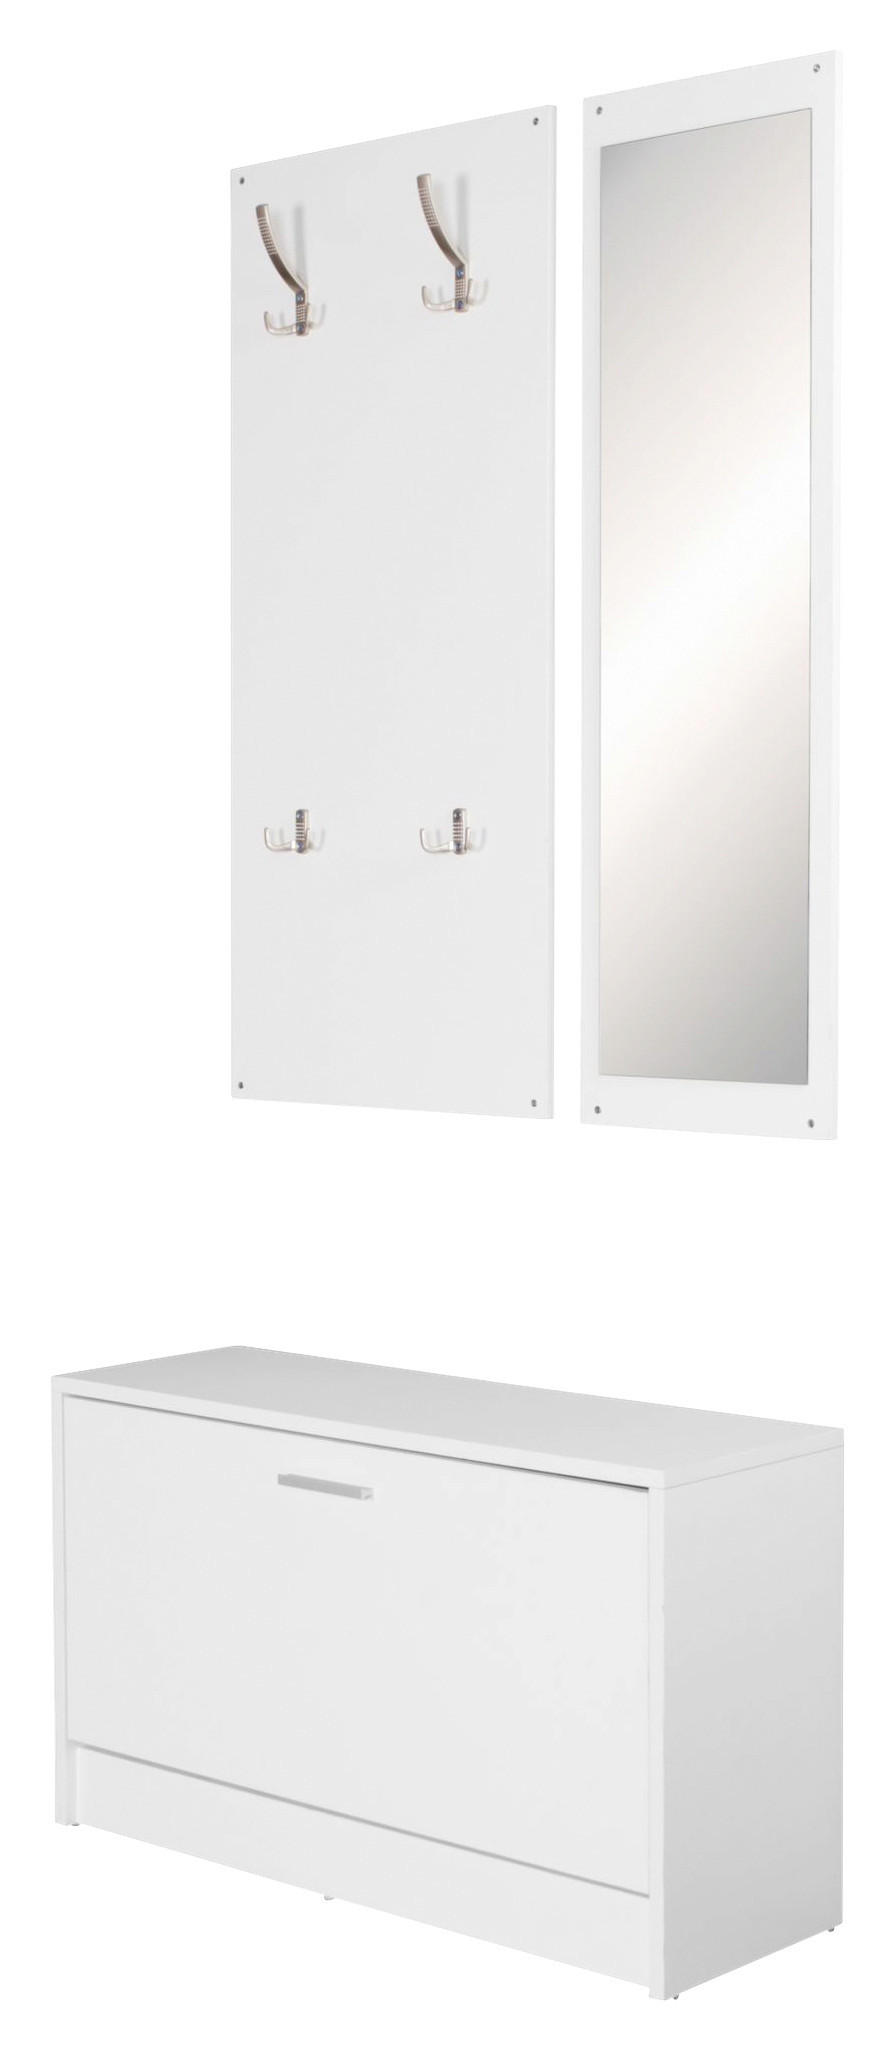 Garderobe weiß B/H/T: ca. 80x180x80 cm Garderobe mit Spiegel - weiß (80,00/180,00/80,00cm)